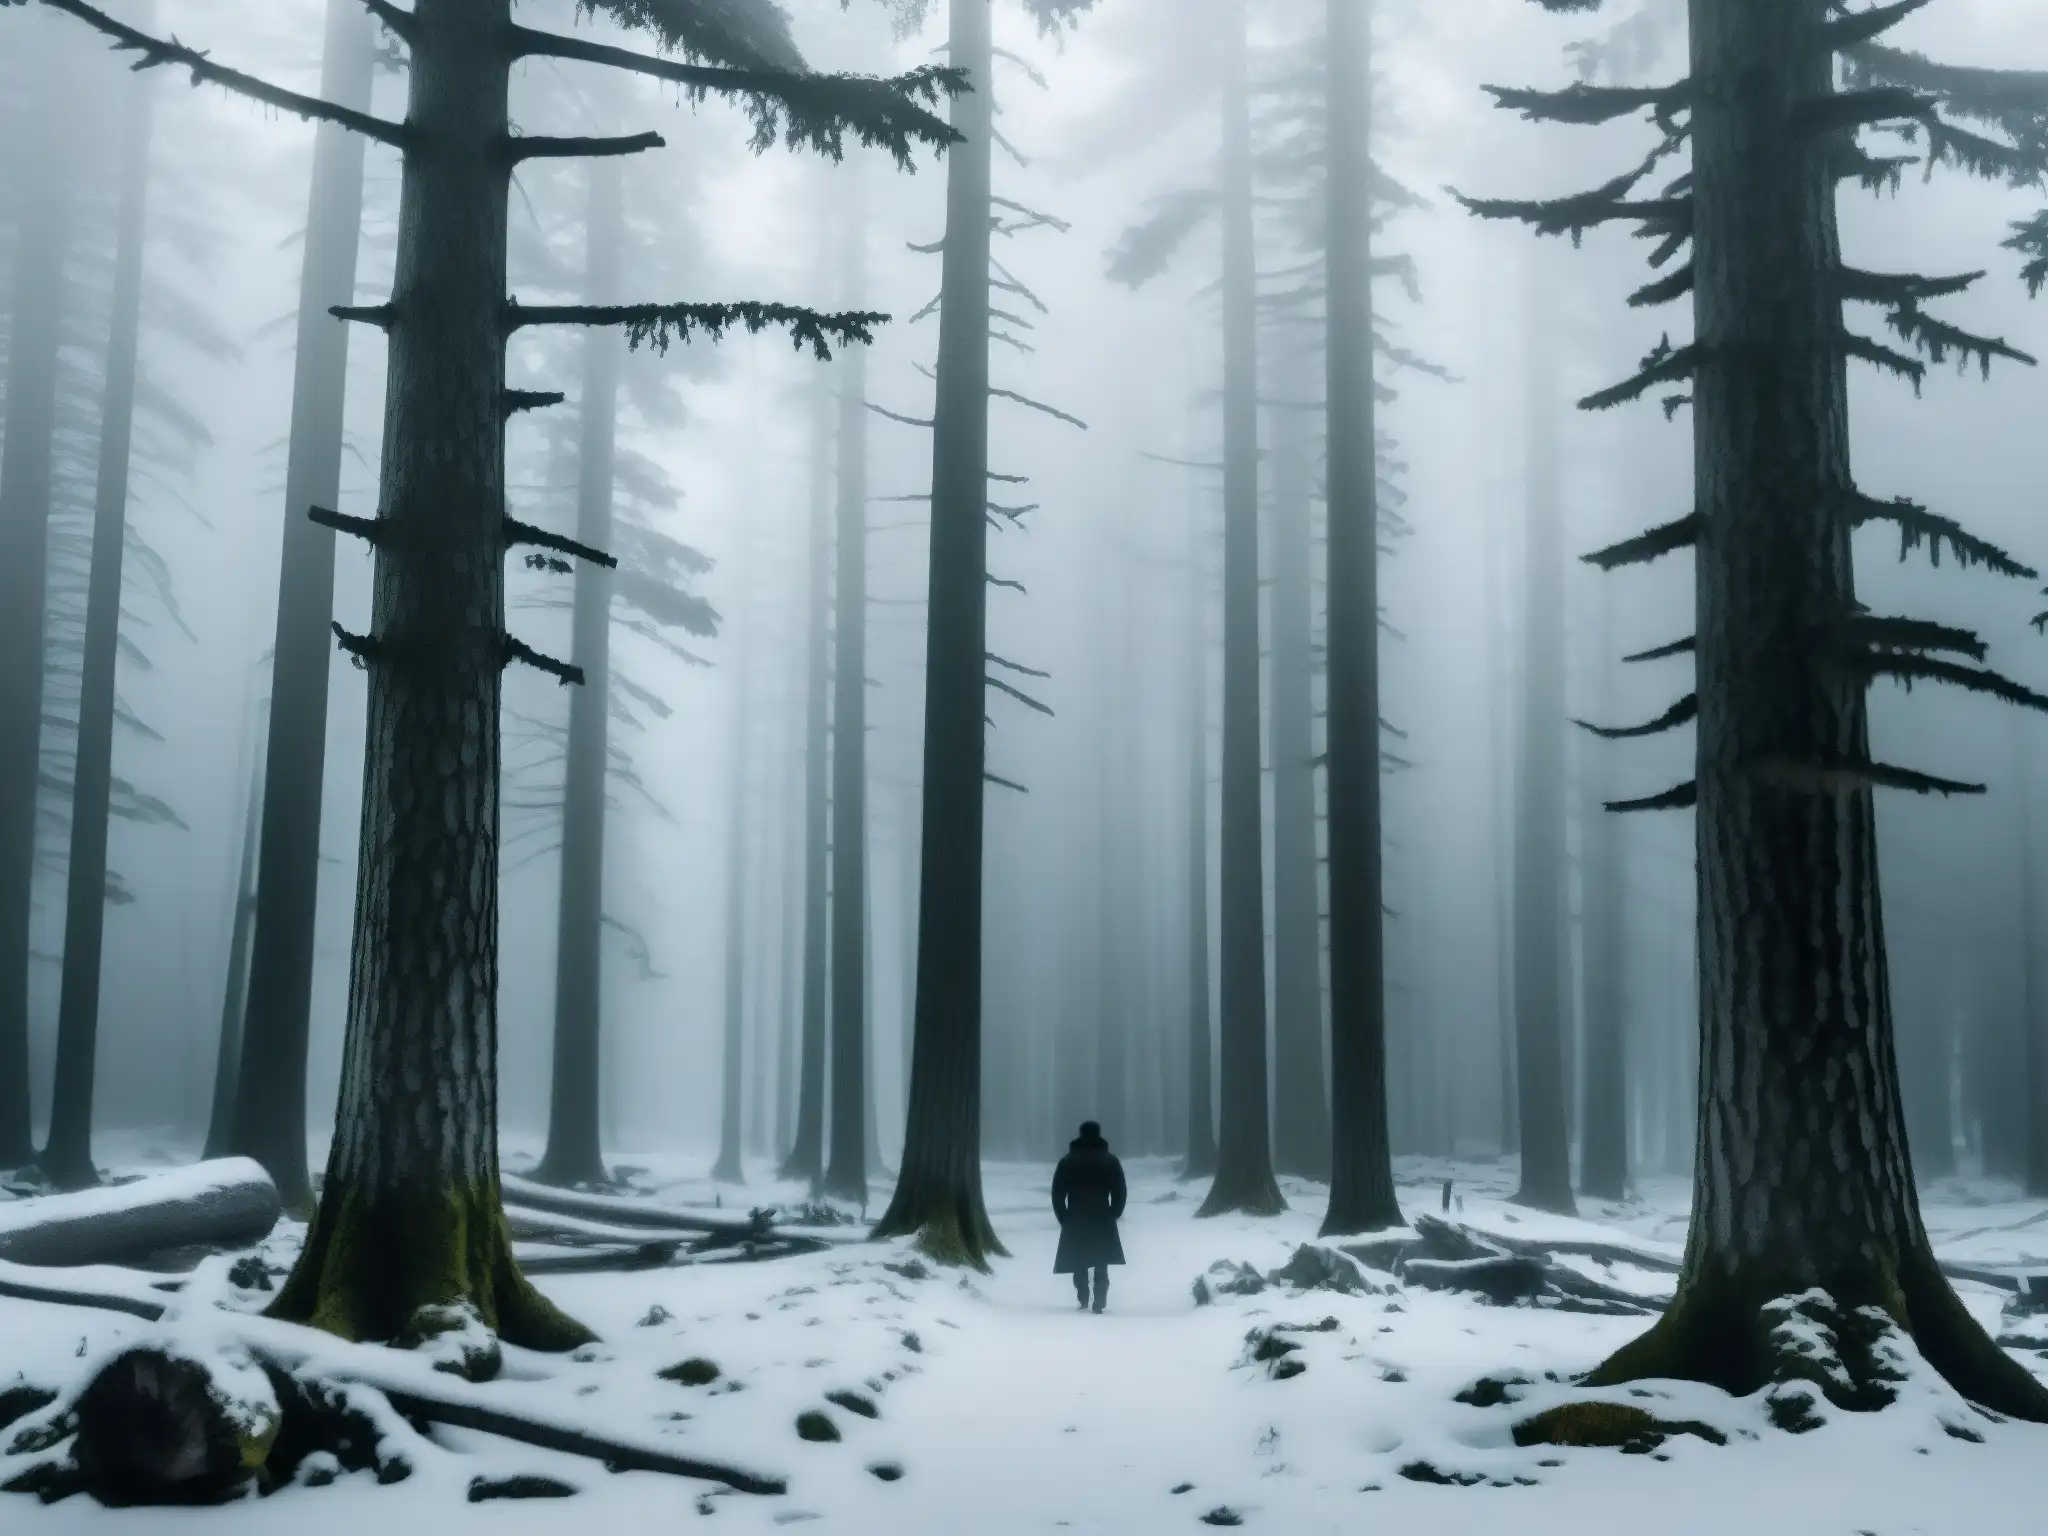 Misterio del Wendigo en Canadá: Escena boscosa neblinosa con árboles nevados, figura misteriosa entre las sombras